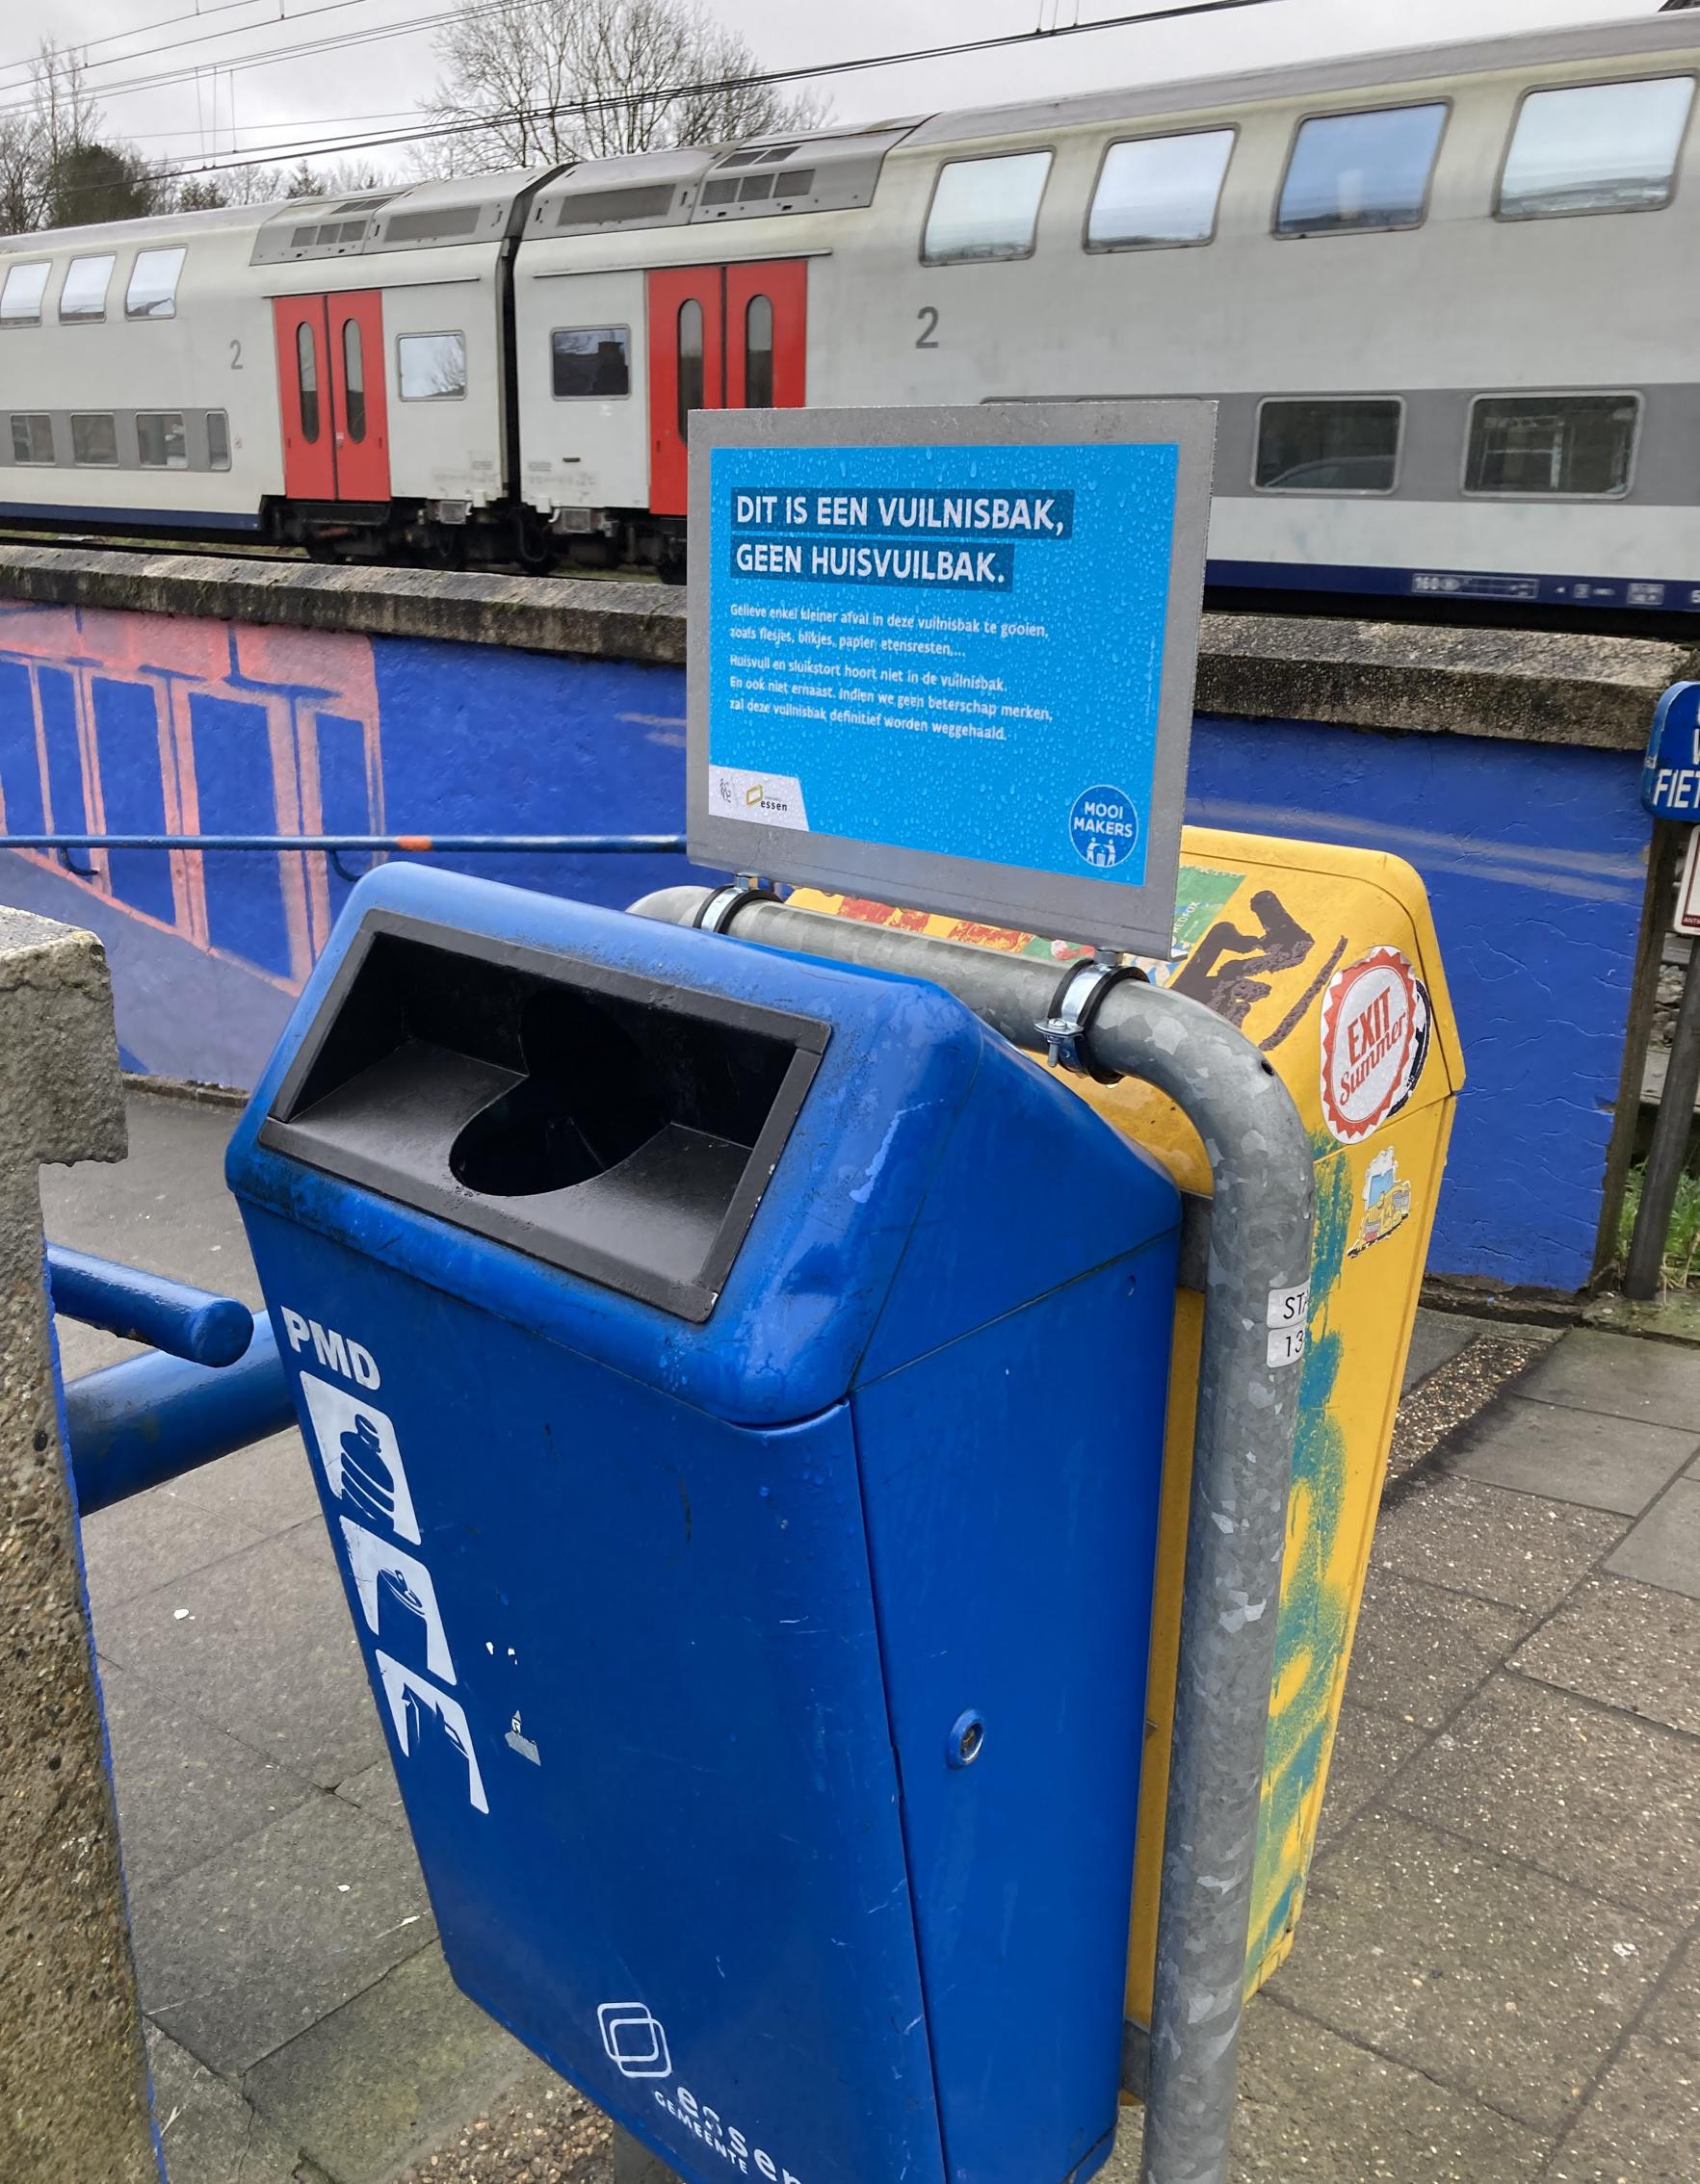 Gewoon Verplicht persoonlijkheid Essen maakt komaf met sluikstort bij ruim 350 vuilnisbakken: “Monitoren  voor proper Essen” (Essen) | Gazet van Antwerpen Mobile